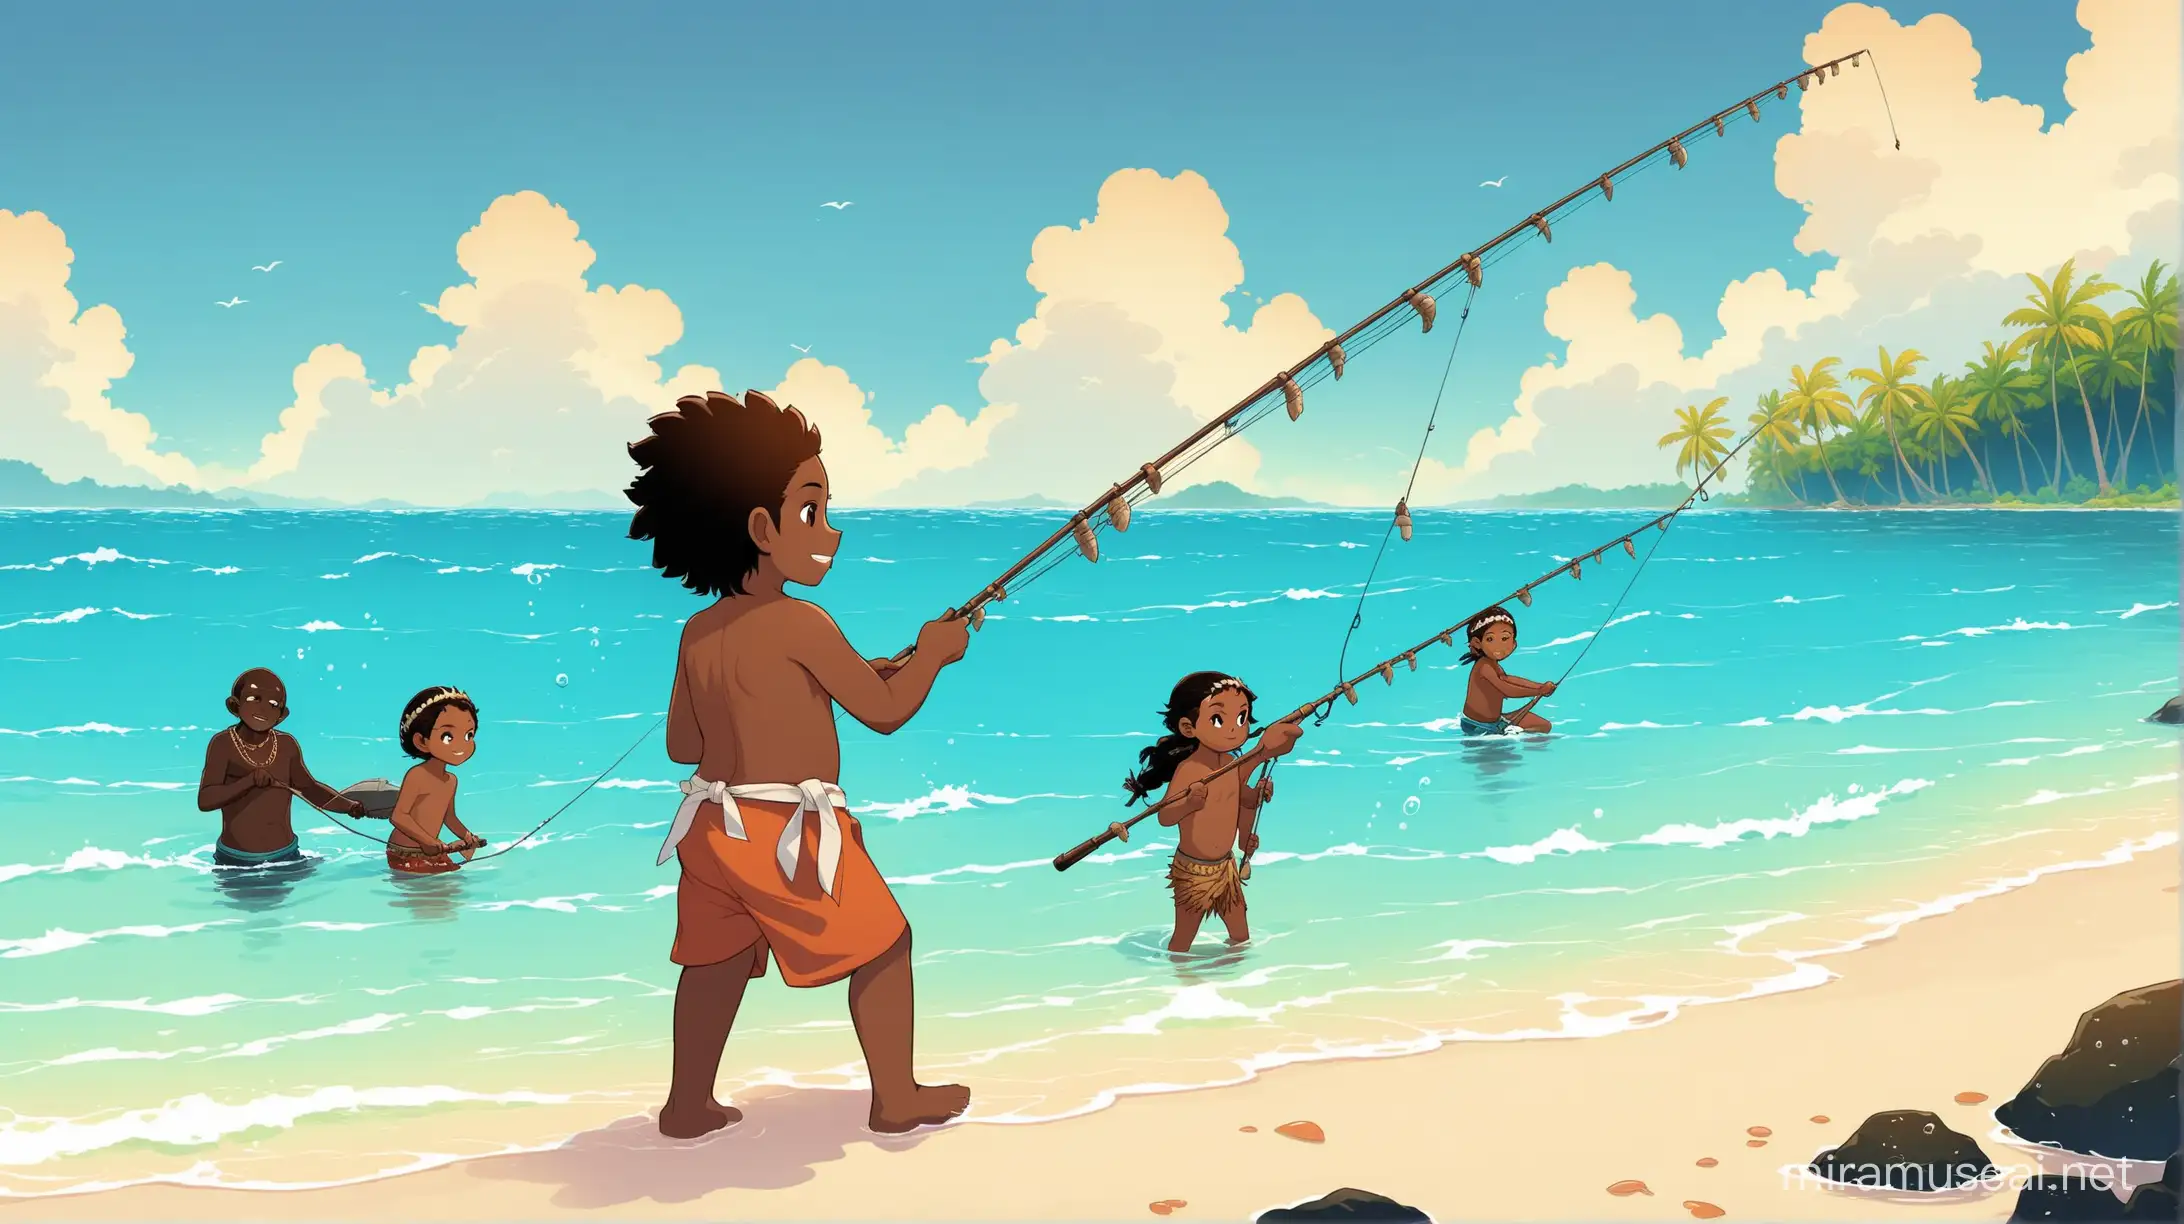 Personnes mélanésiennes de tout âge dans la mer, en train de pêcher, avec un style wakfu